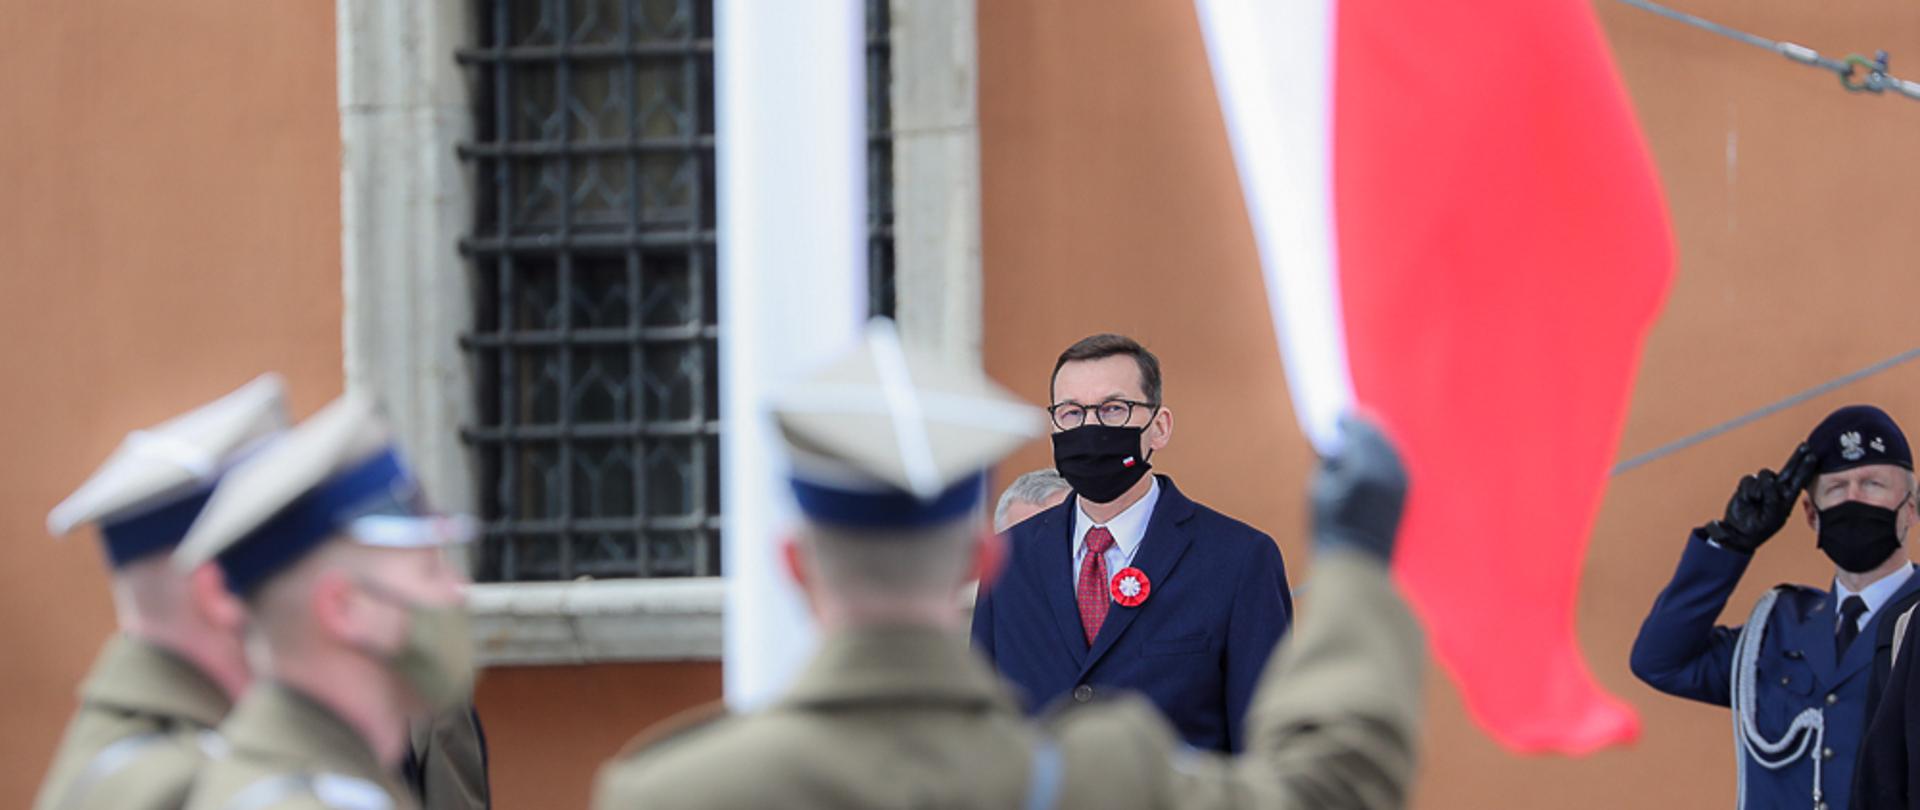 Premier Mateusz Morawiecki wpatruje się we flagę wciąganą na maszt.